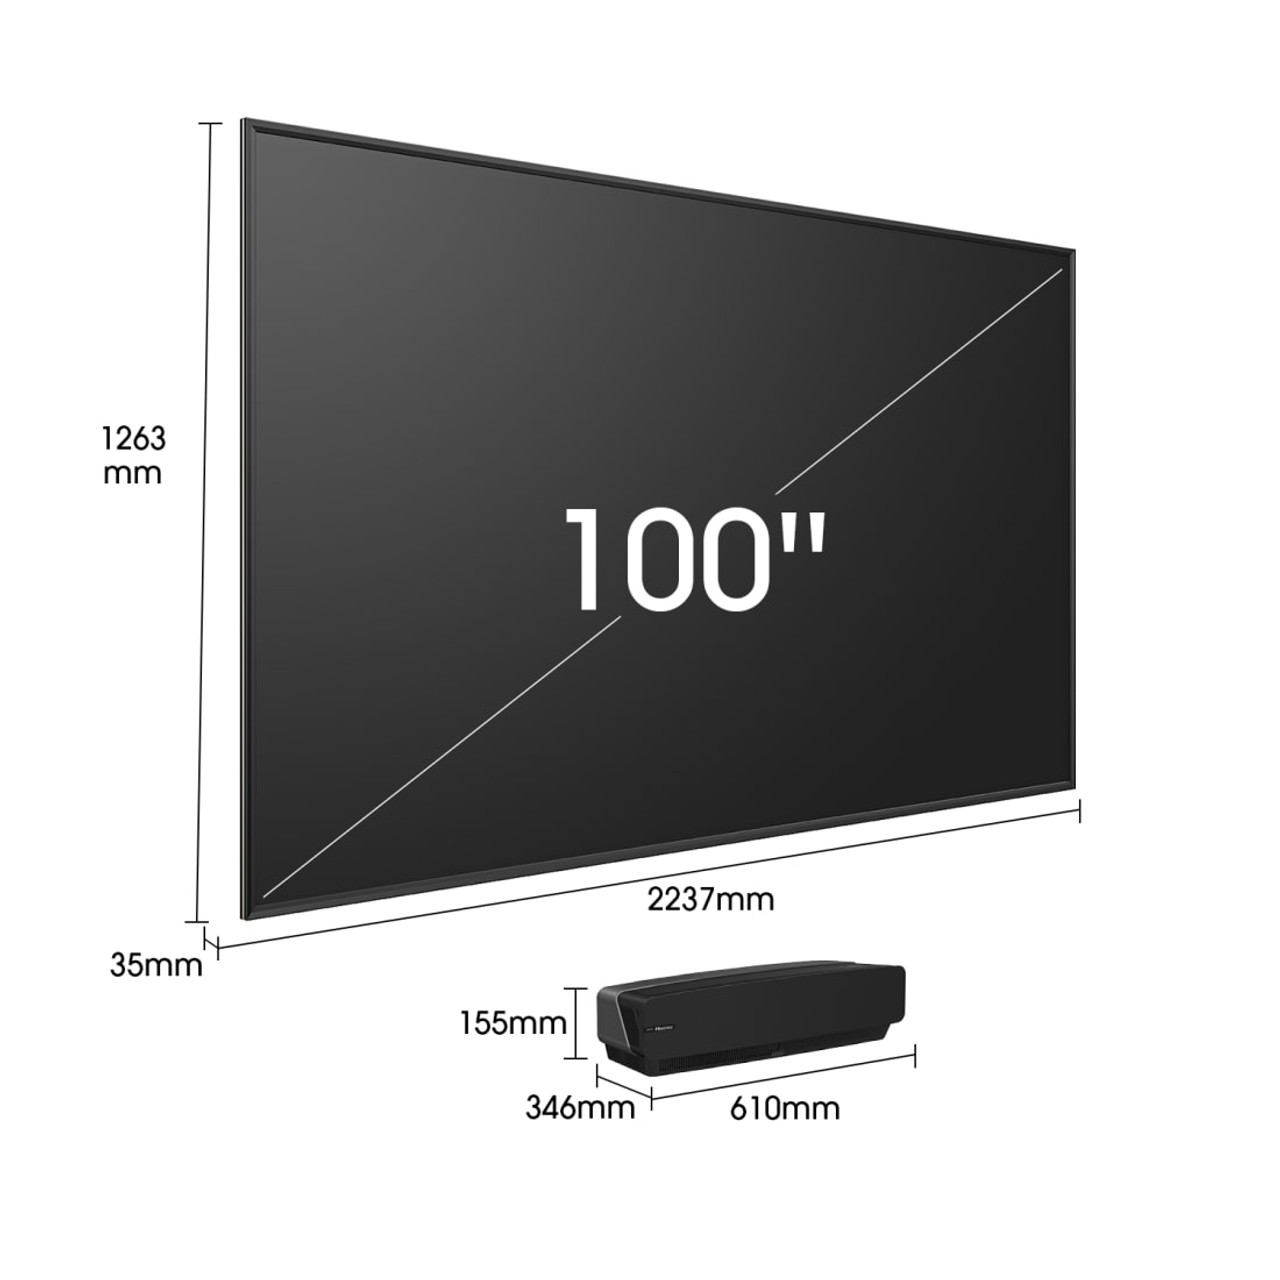 Hisense 100” 4K Smart Laser TV - 100L5GCINE100A